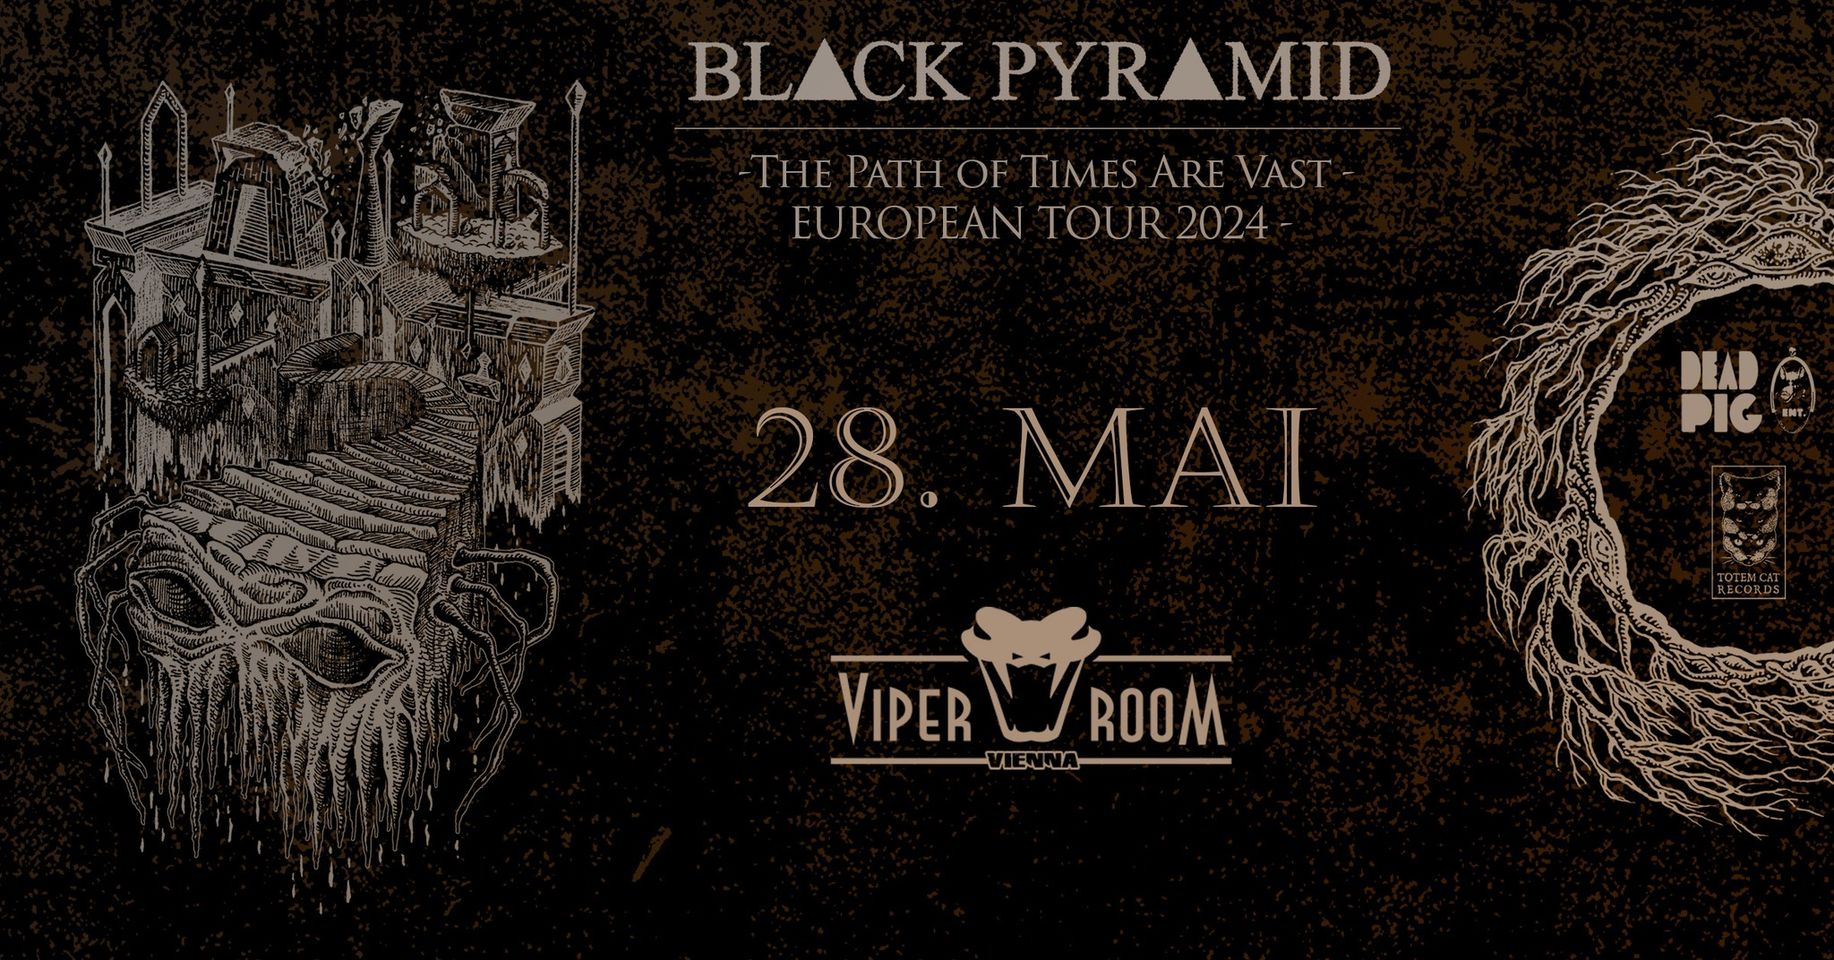 Black Pyramid am 28. May 2024 @ Viper Room.